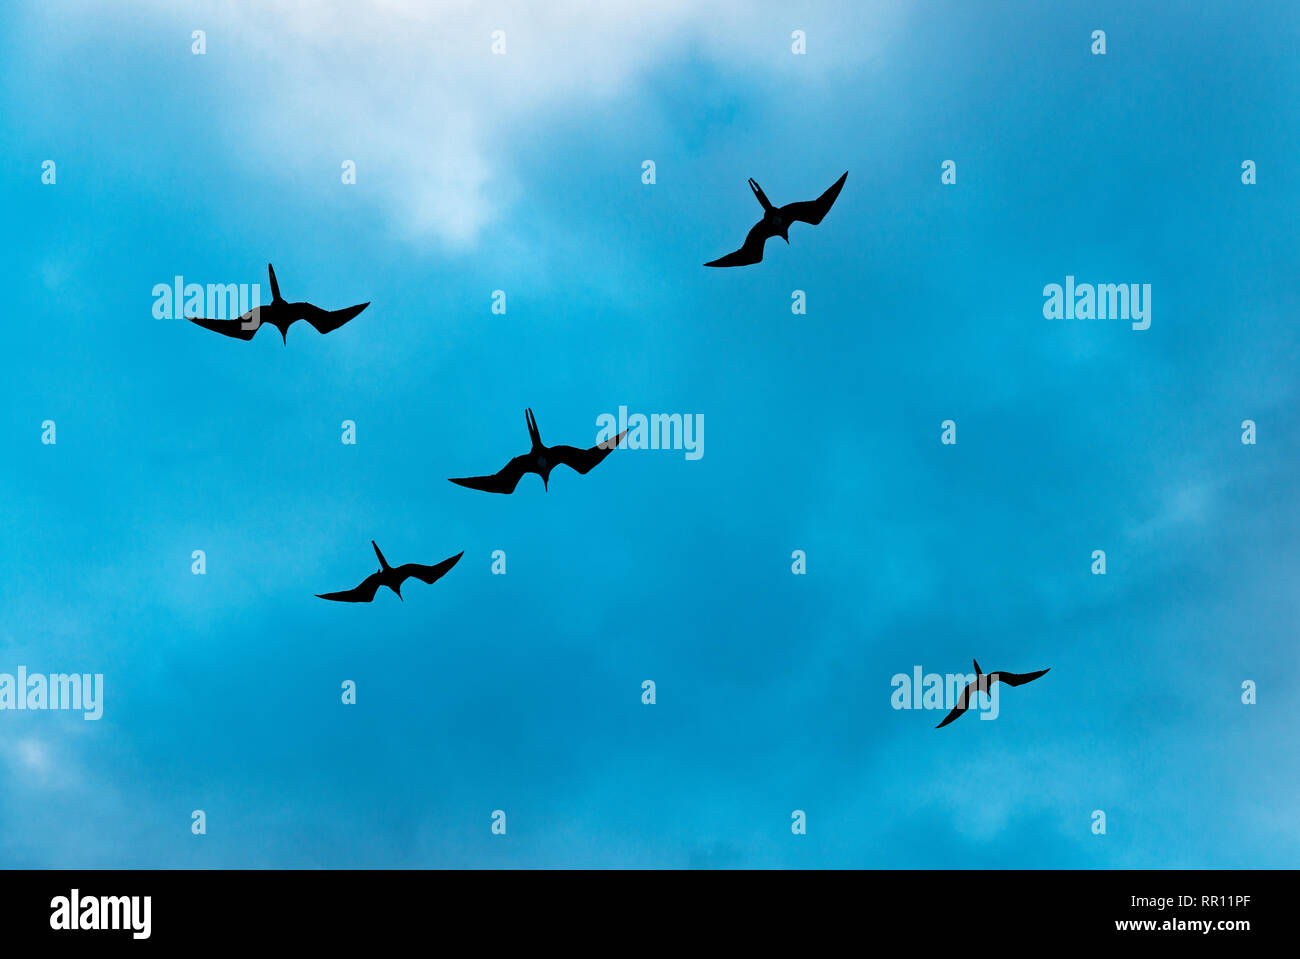 Un grupo de cinco magníficos pájaros fragata magnificens (frigata) volando alto contra un cielo azul, el parque nacional de las Islas Galápagos, Ecuador. Foto de stock